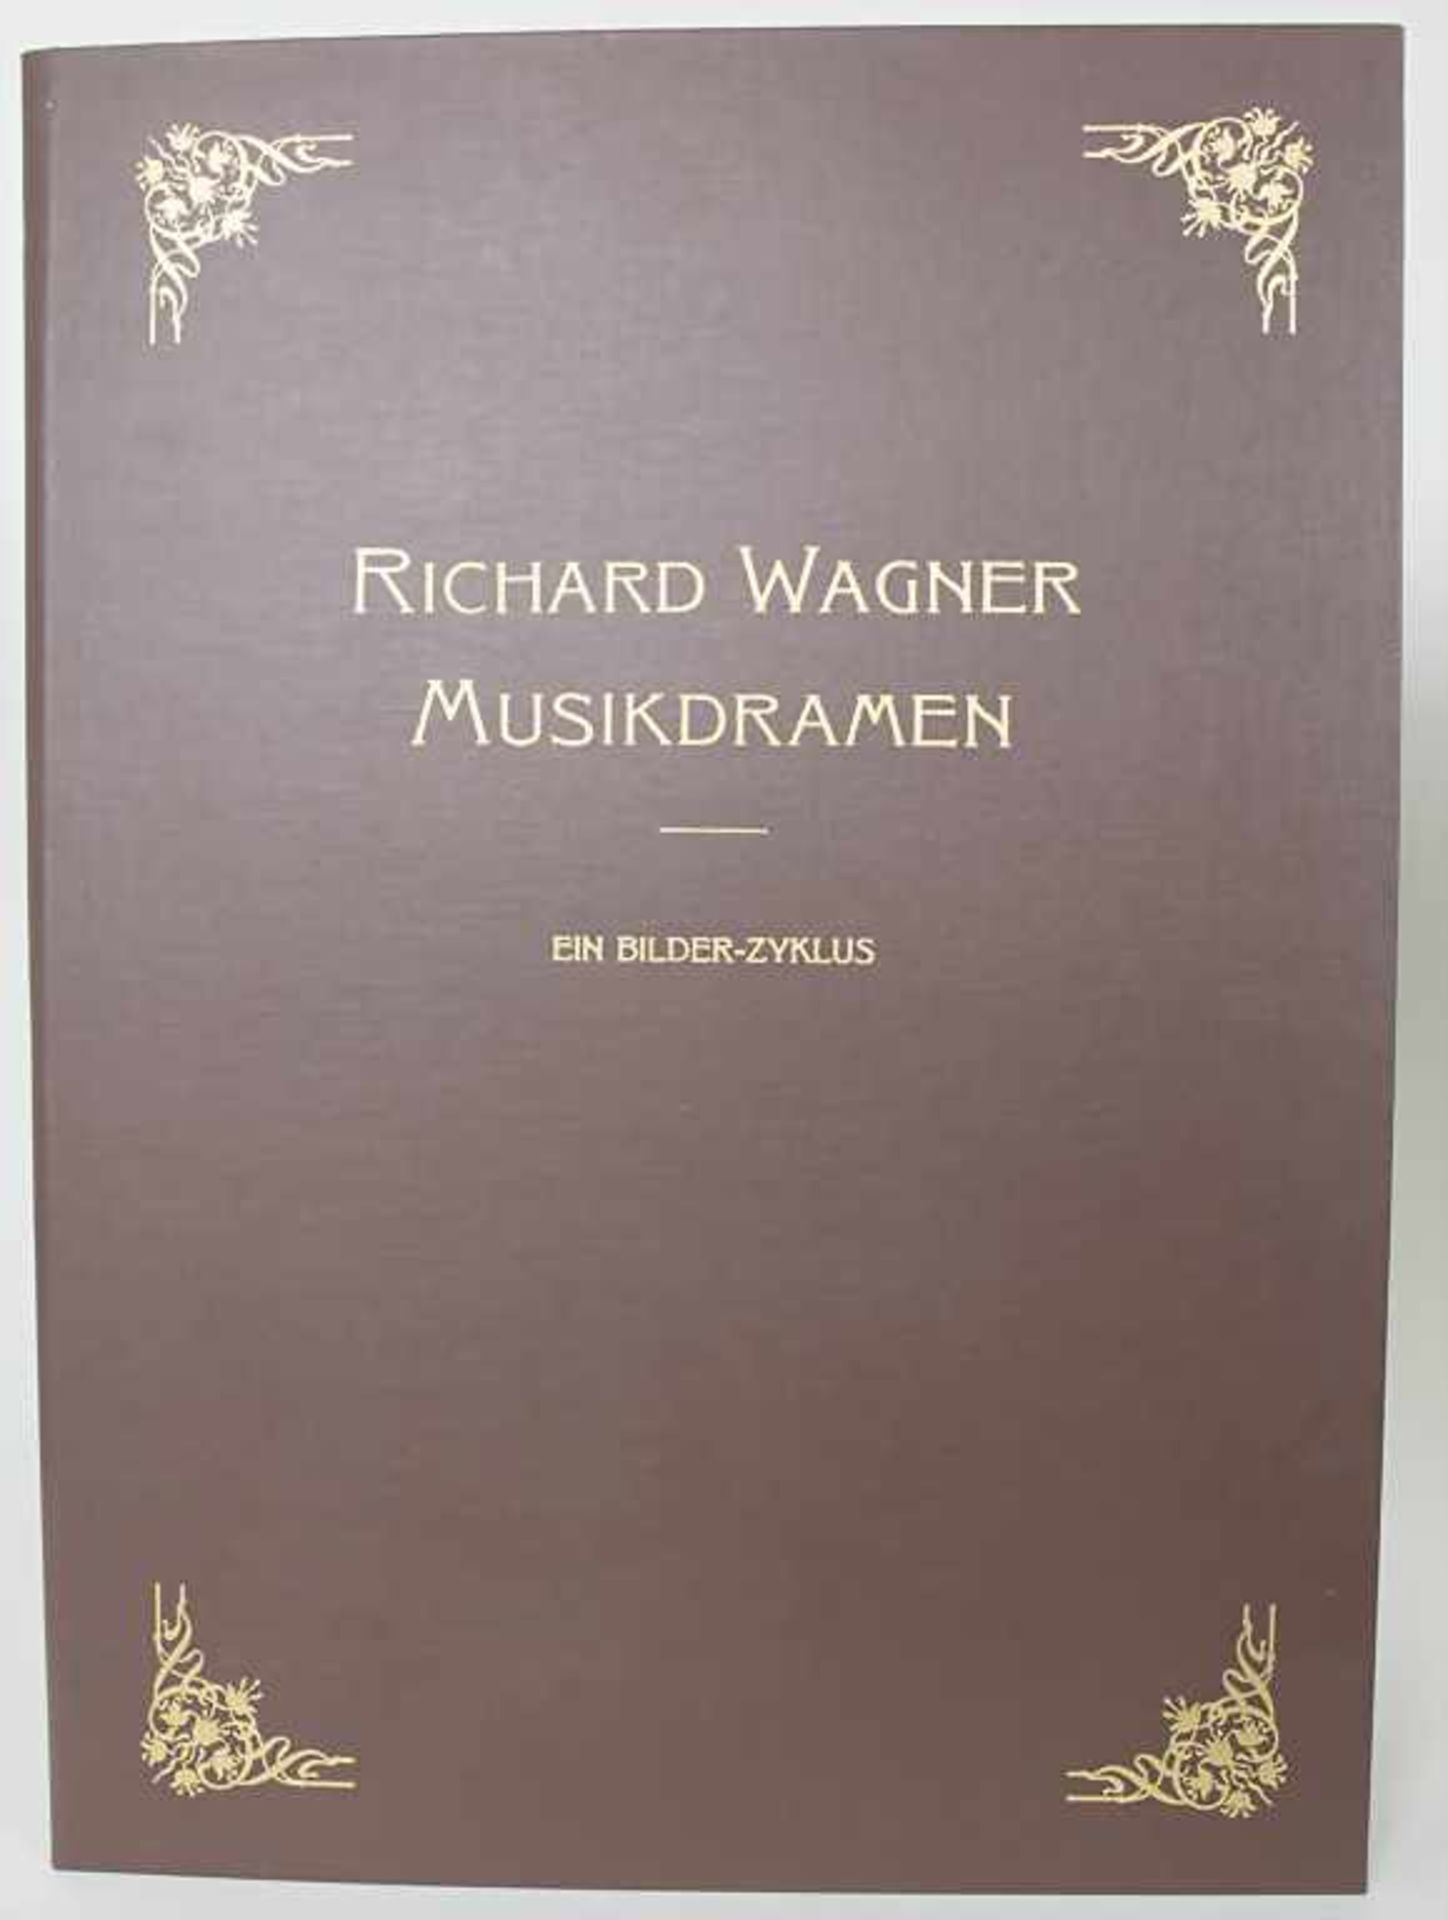 Ferdinand Leeke: 'Richard Wagner. Musikdramen'Ein Bilder-Zyklus, Handabzüge nach Ferdinand Leeke von